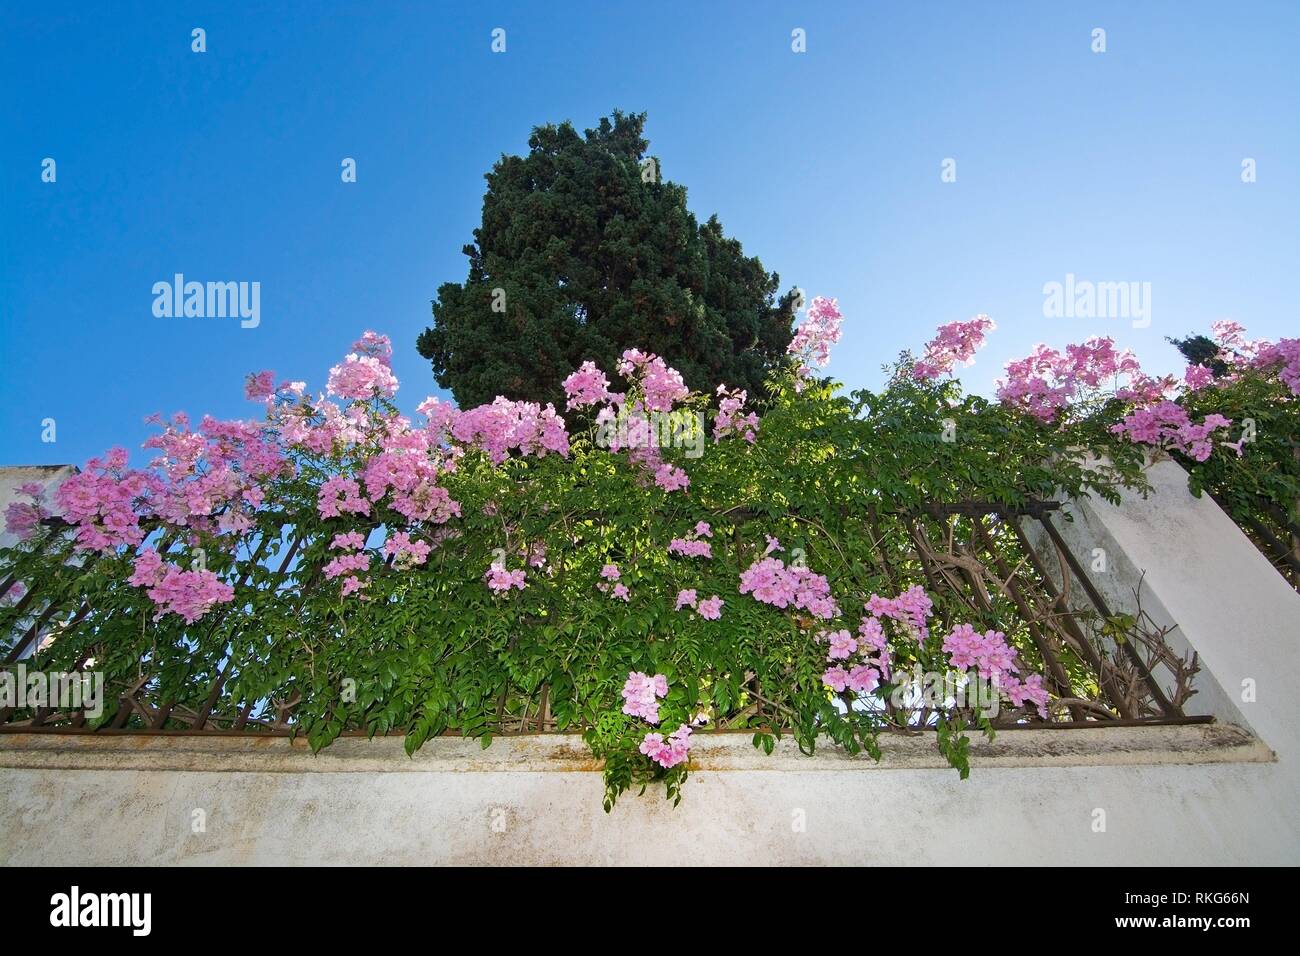 Rosa blühenden Busch mit grünen Blättern auf weißen Stein Wand- und  Sternenhimmel Sonne durch auf Mallorca, Spanien Stockfotografie - Alamy